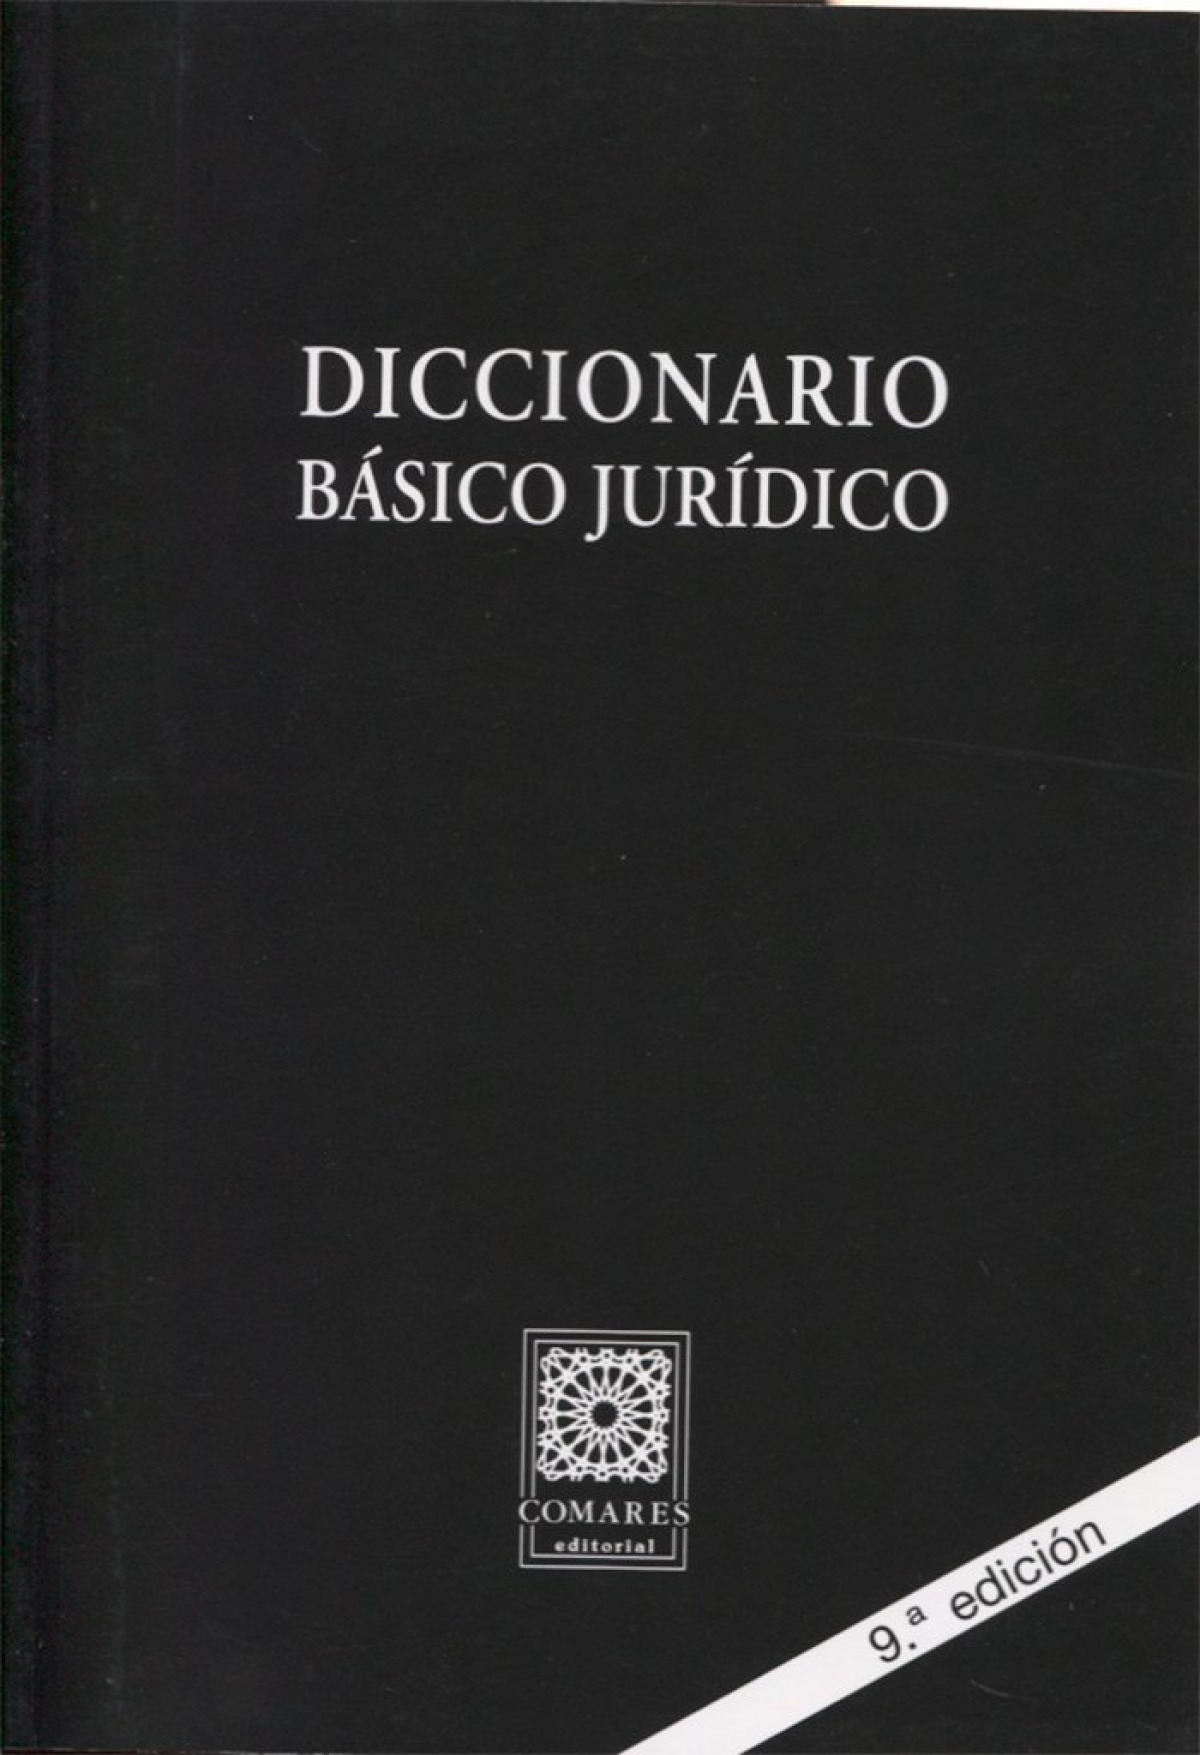 Diccionario básico jurídico - Vv.Aa.